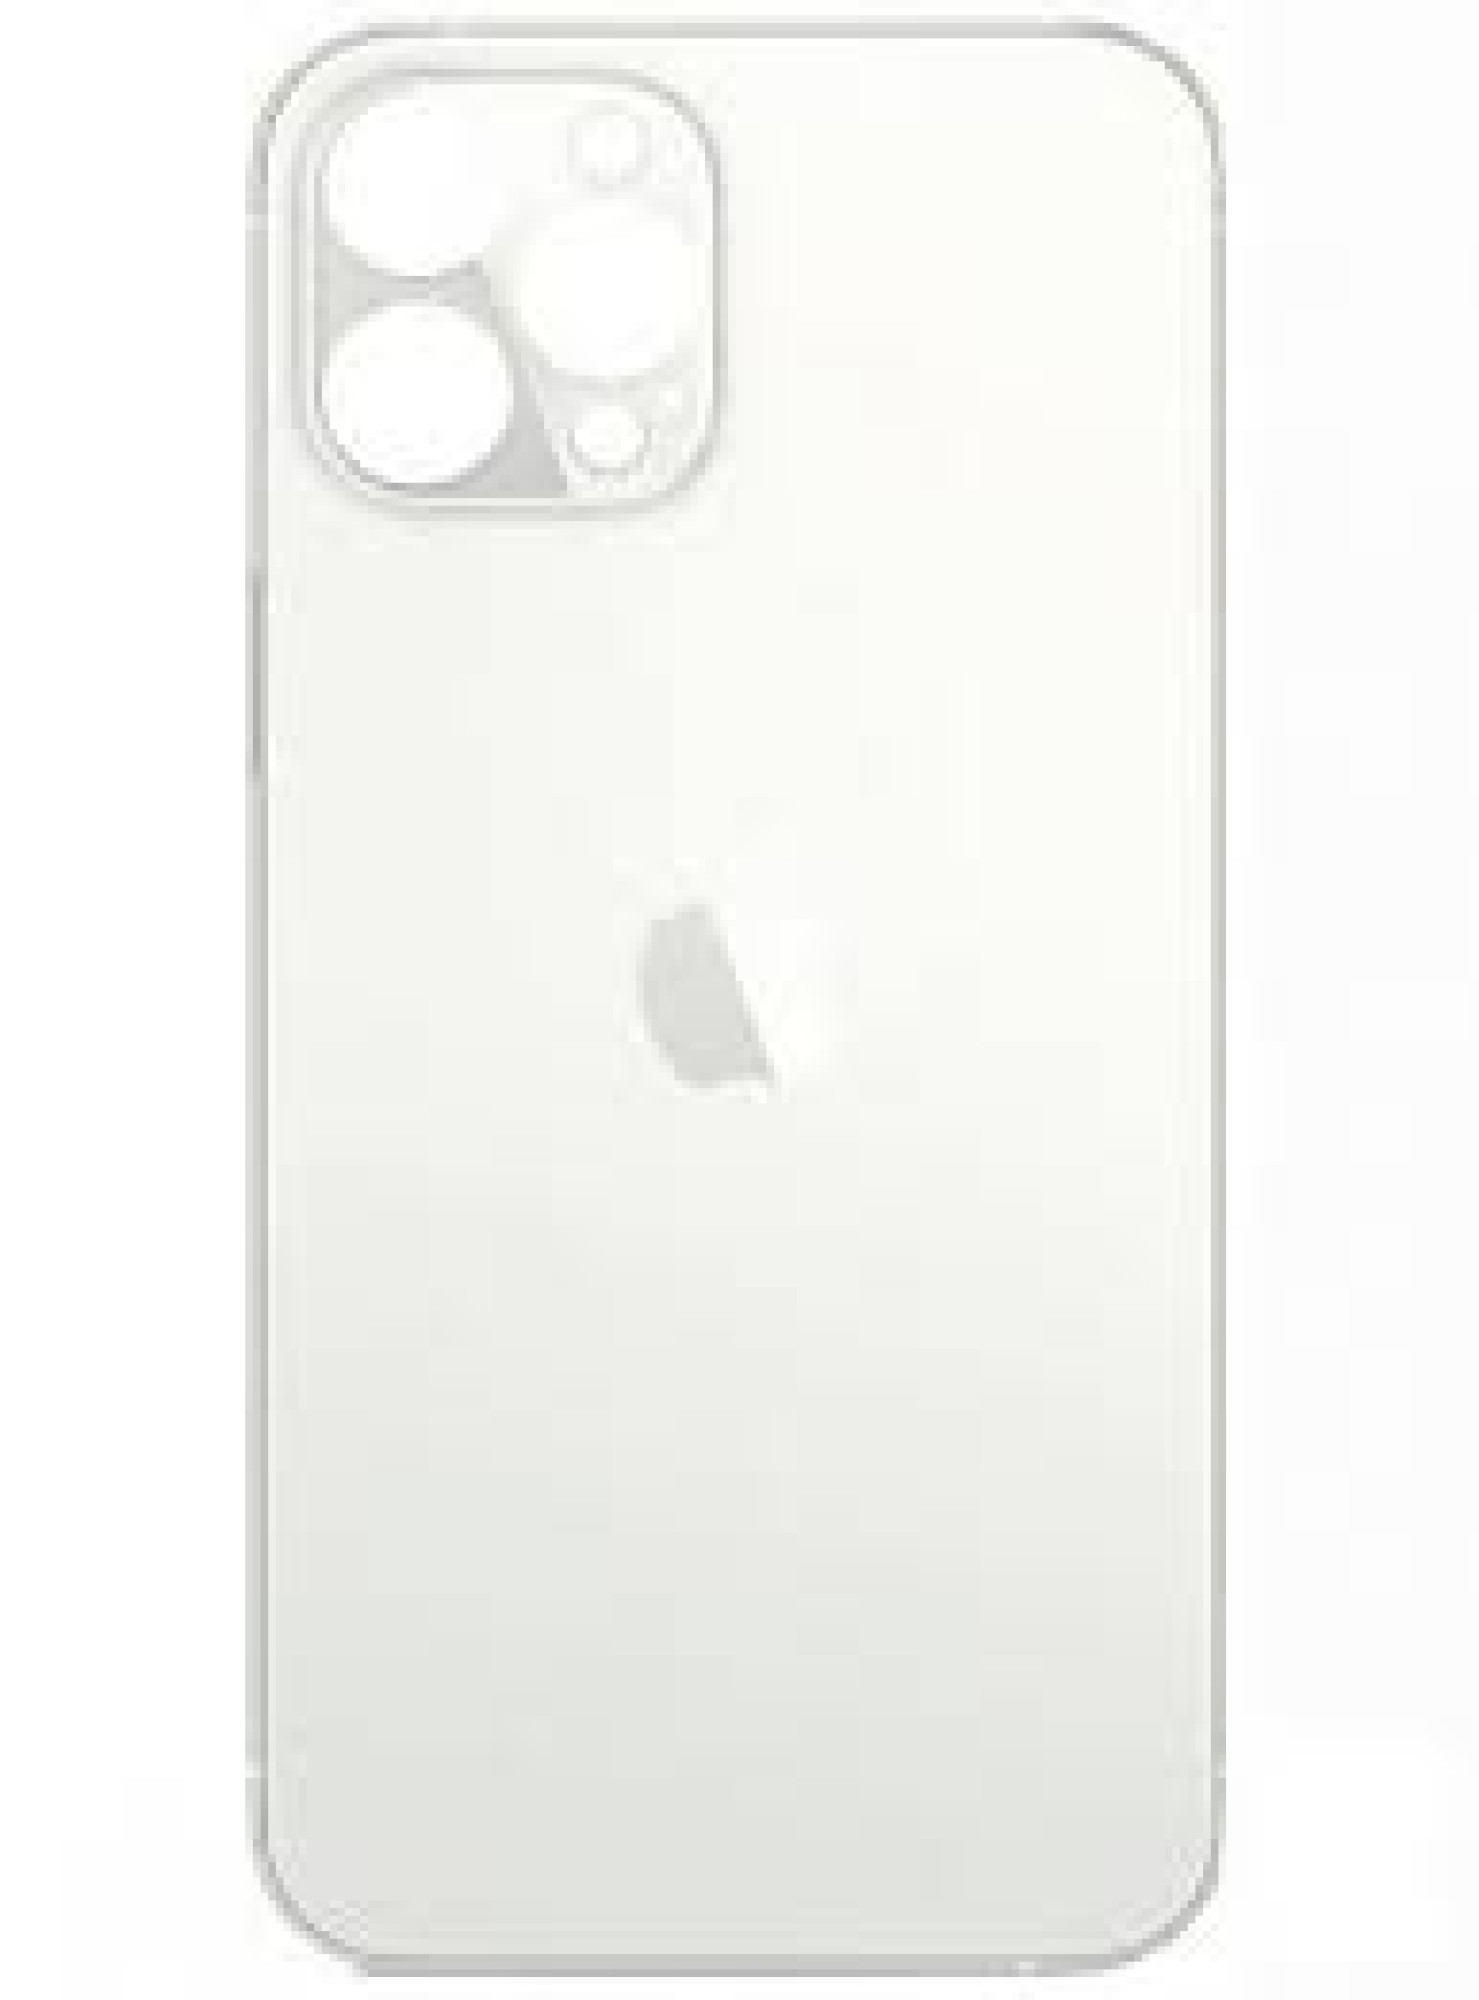 Задняя крышка для Apple iPhone 12 Pro Max (широкое отверстие под камеру), белая - фото